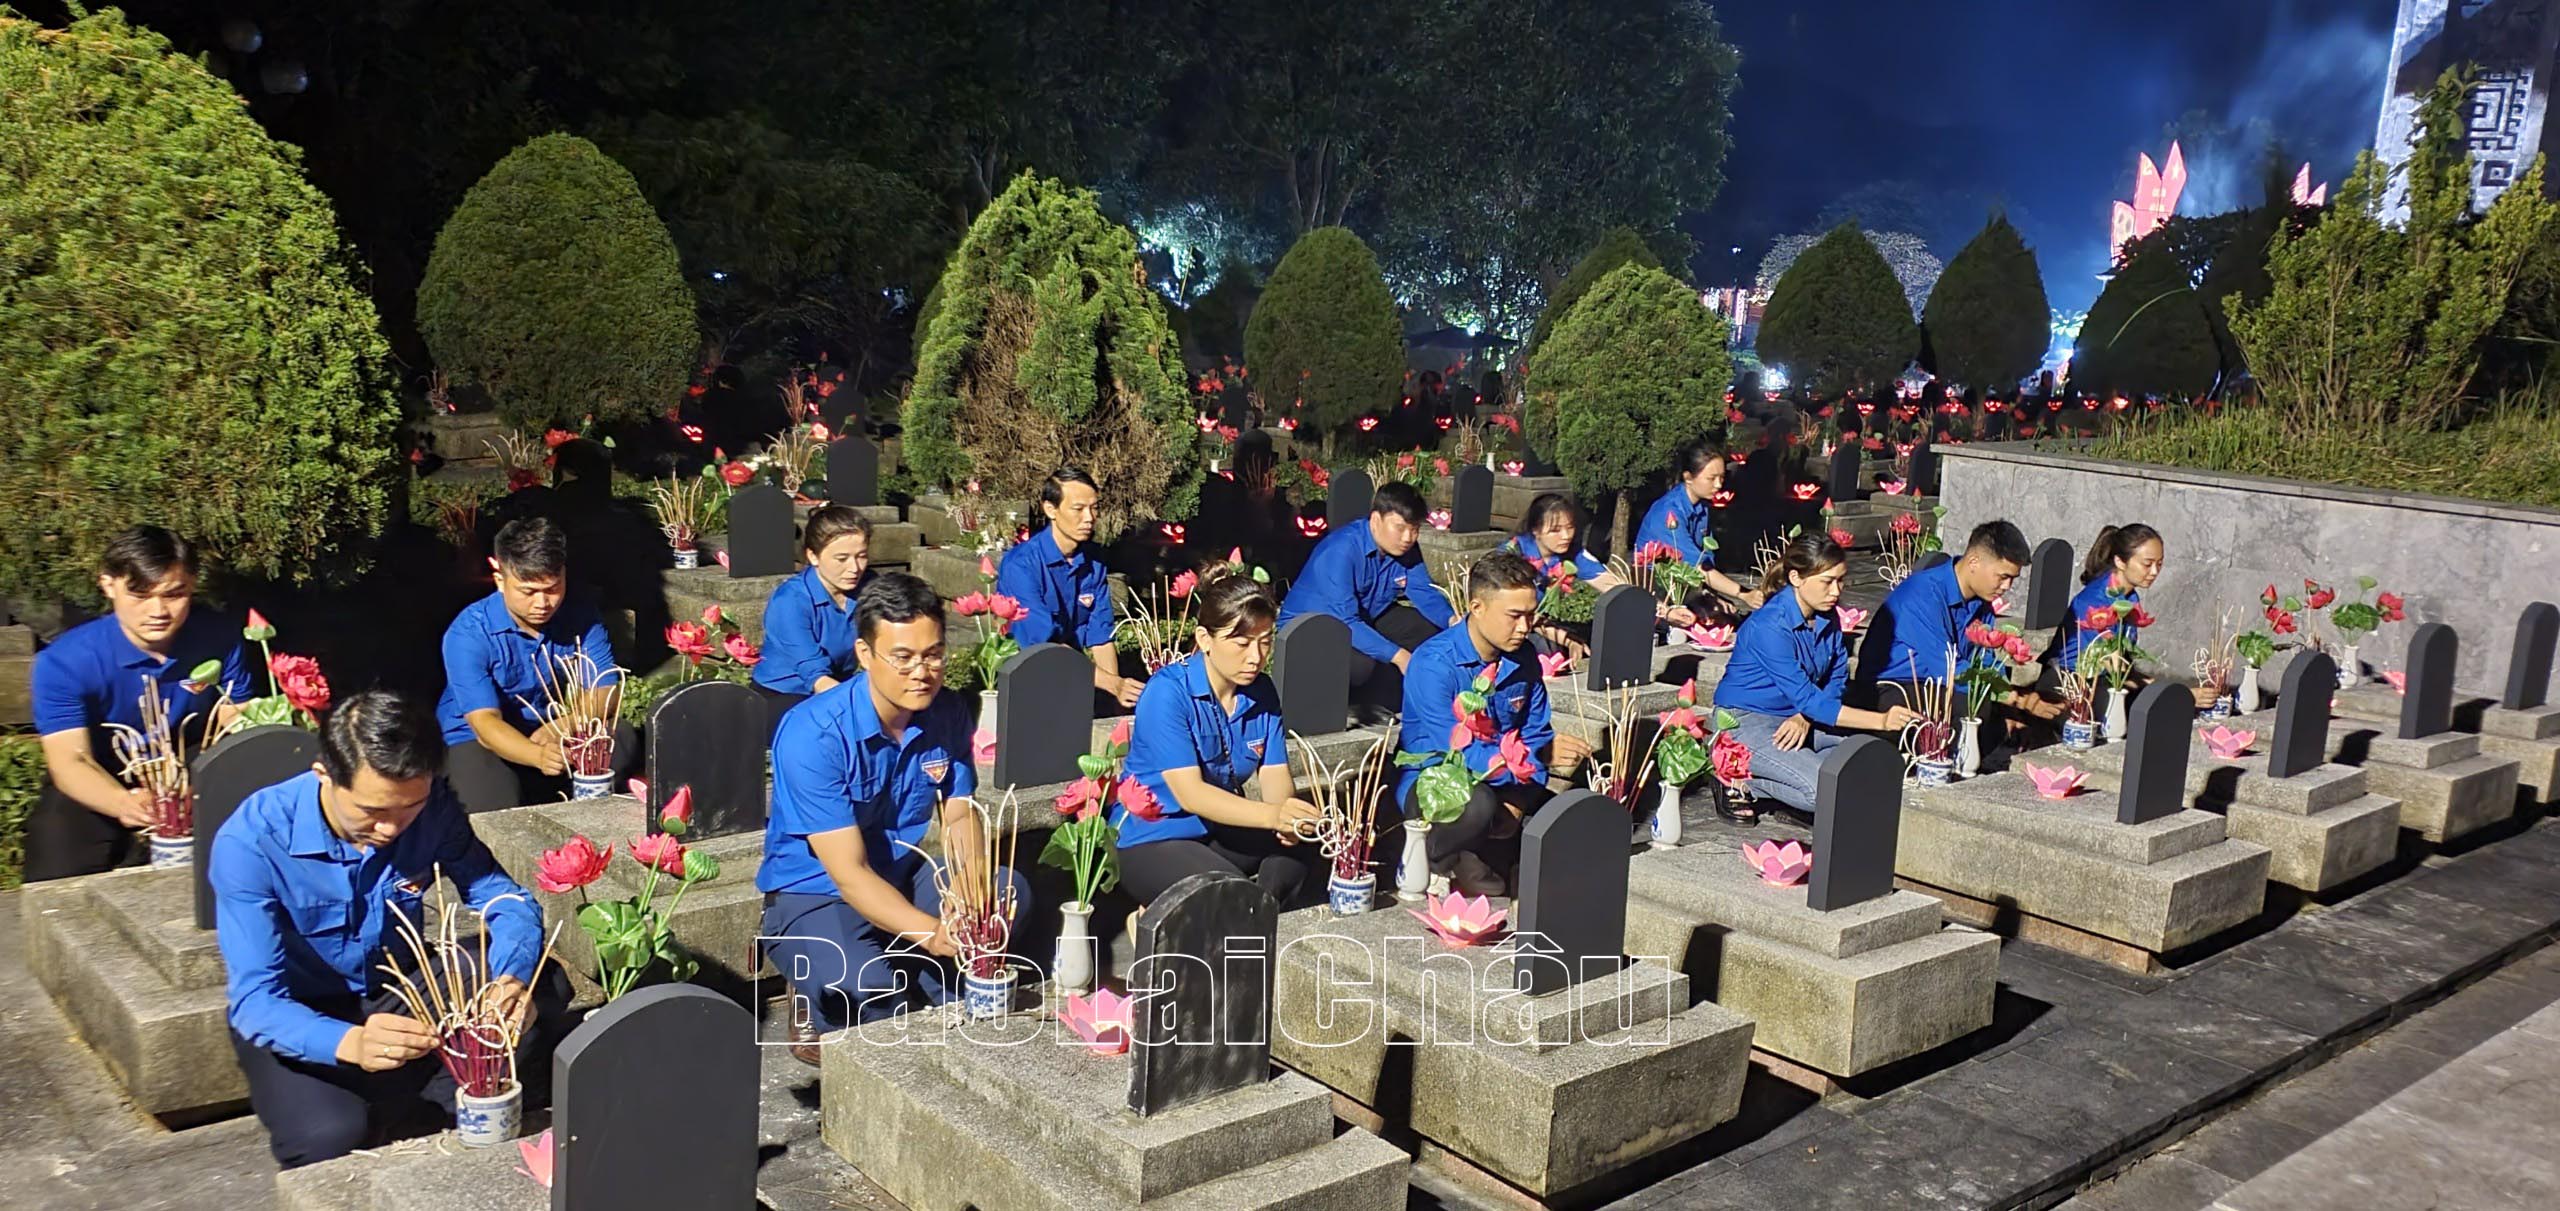 Lực lượng đoàn viên thanh niên thắp nén hương với tấm lòng thành kính dâng lên các anh hùng liệt sỹ.